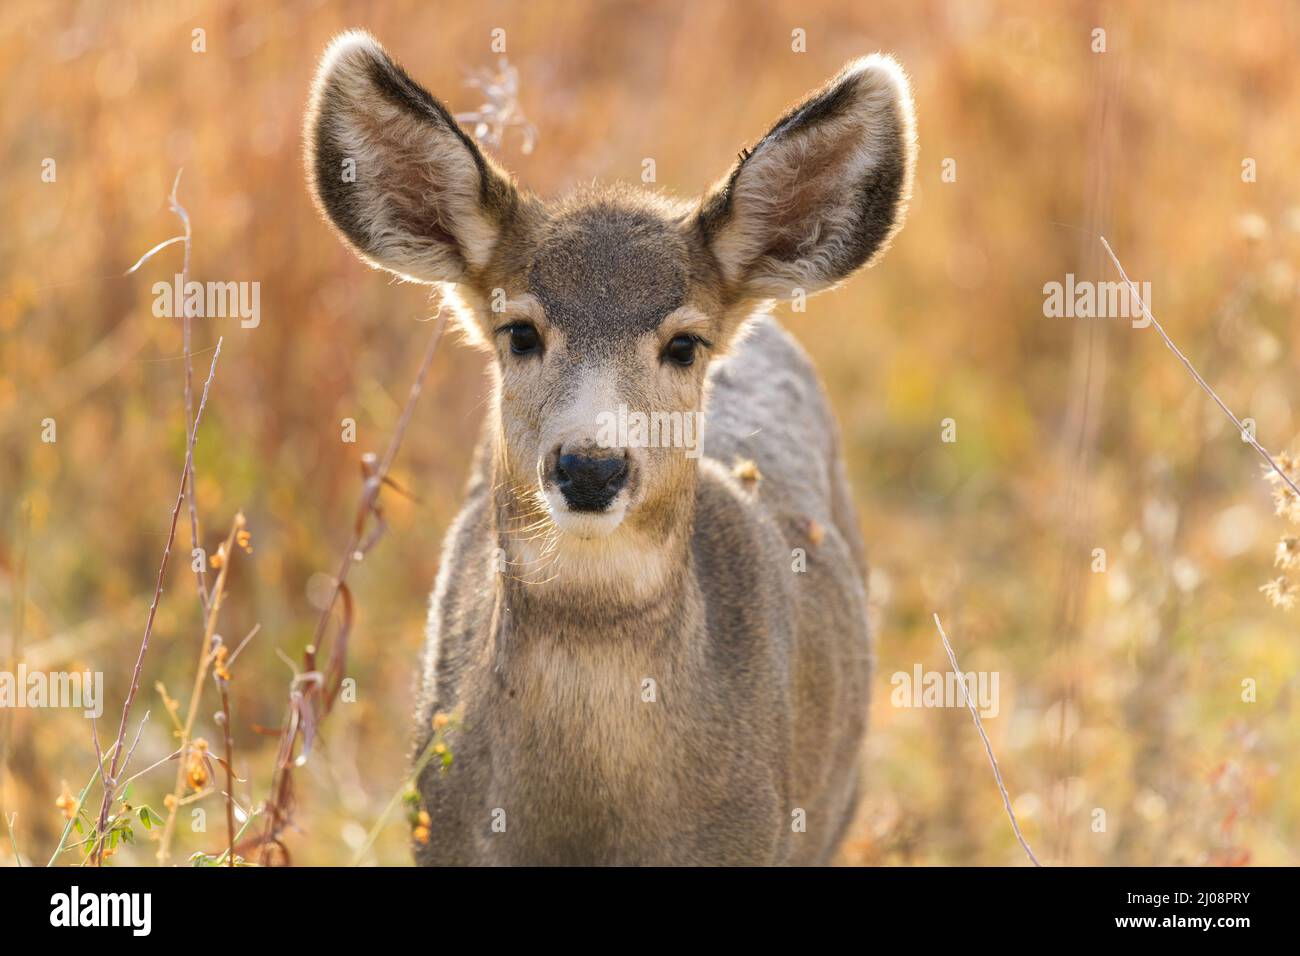 Young Mule Deer - Nahaufnahme eines jungen Maultierhirsches, der an einem sonnigen Herbstabend auf einer Bergwiese steht. Chatfield State Park, CO, USA. Stockfoto